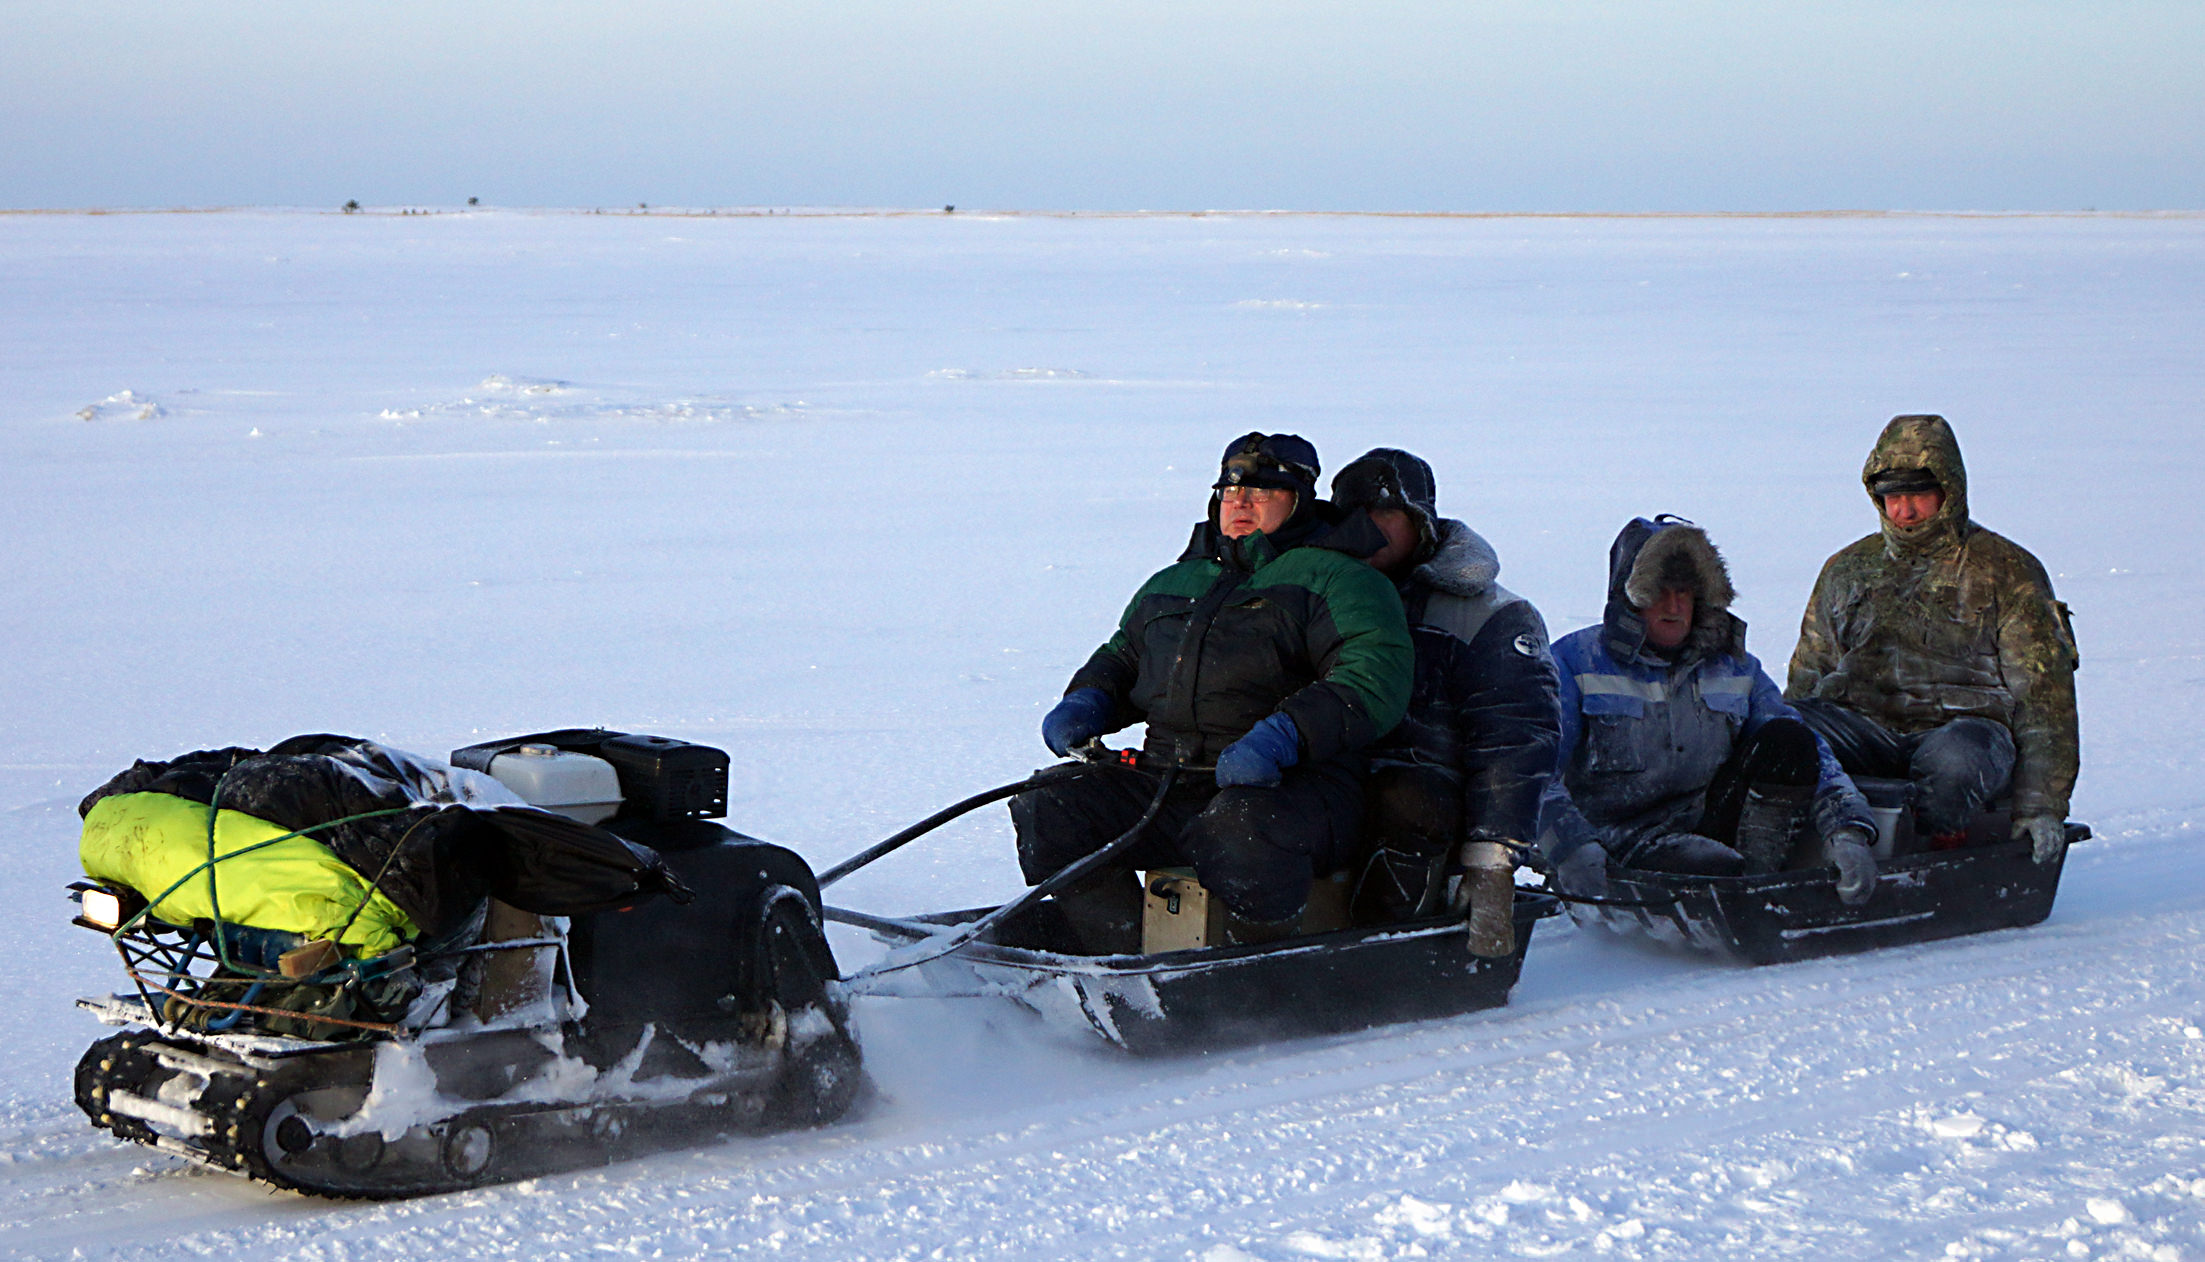 Форум на севере северодвинск. Зимняя рыбалка на белом море Северодвинск. Соната тур рыбалка на севере Северодвинск. Зимняя рыбалка в Северодвинске. Рыбалка на севере Северодвинск.